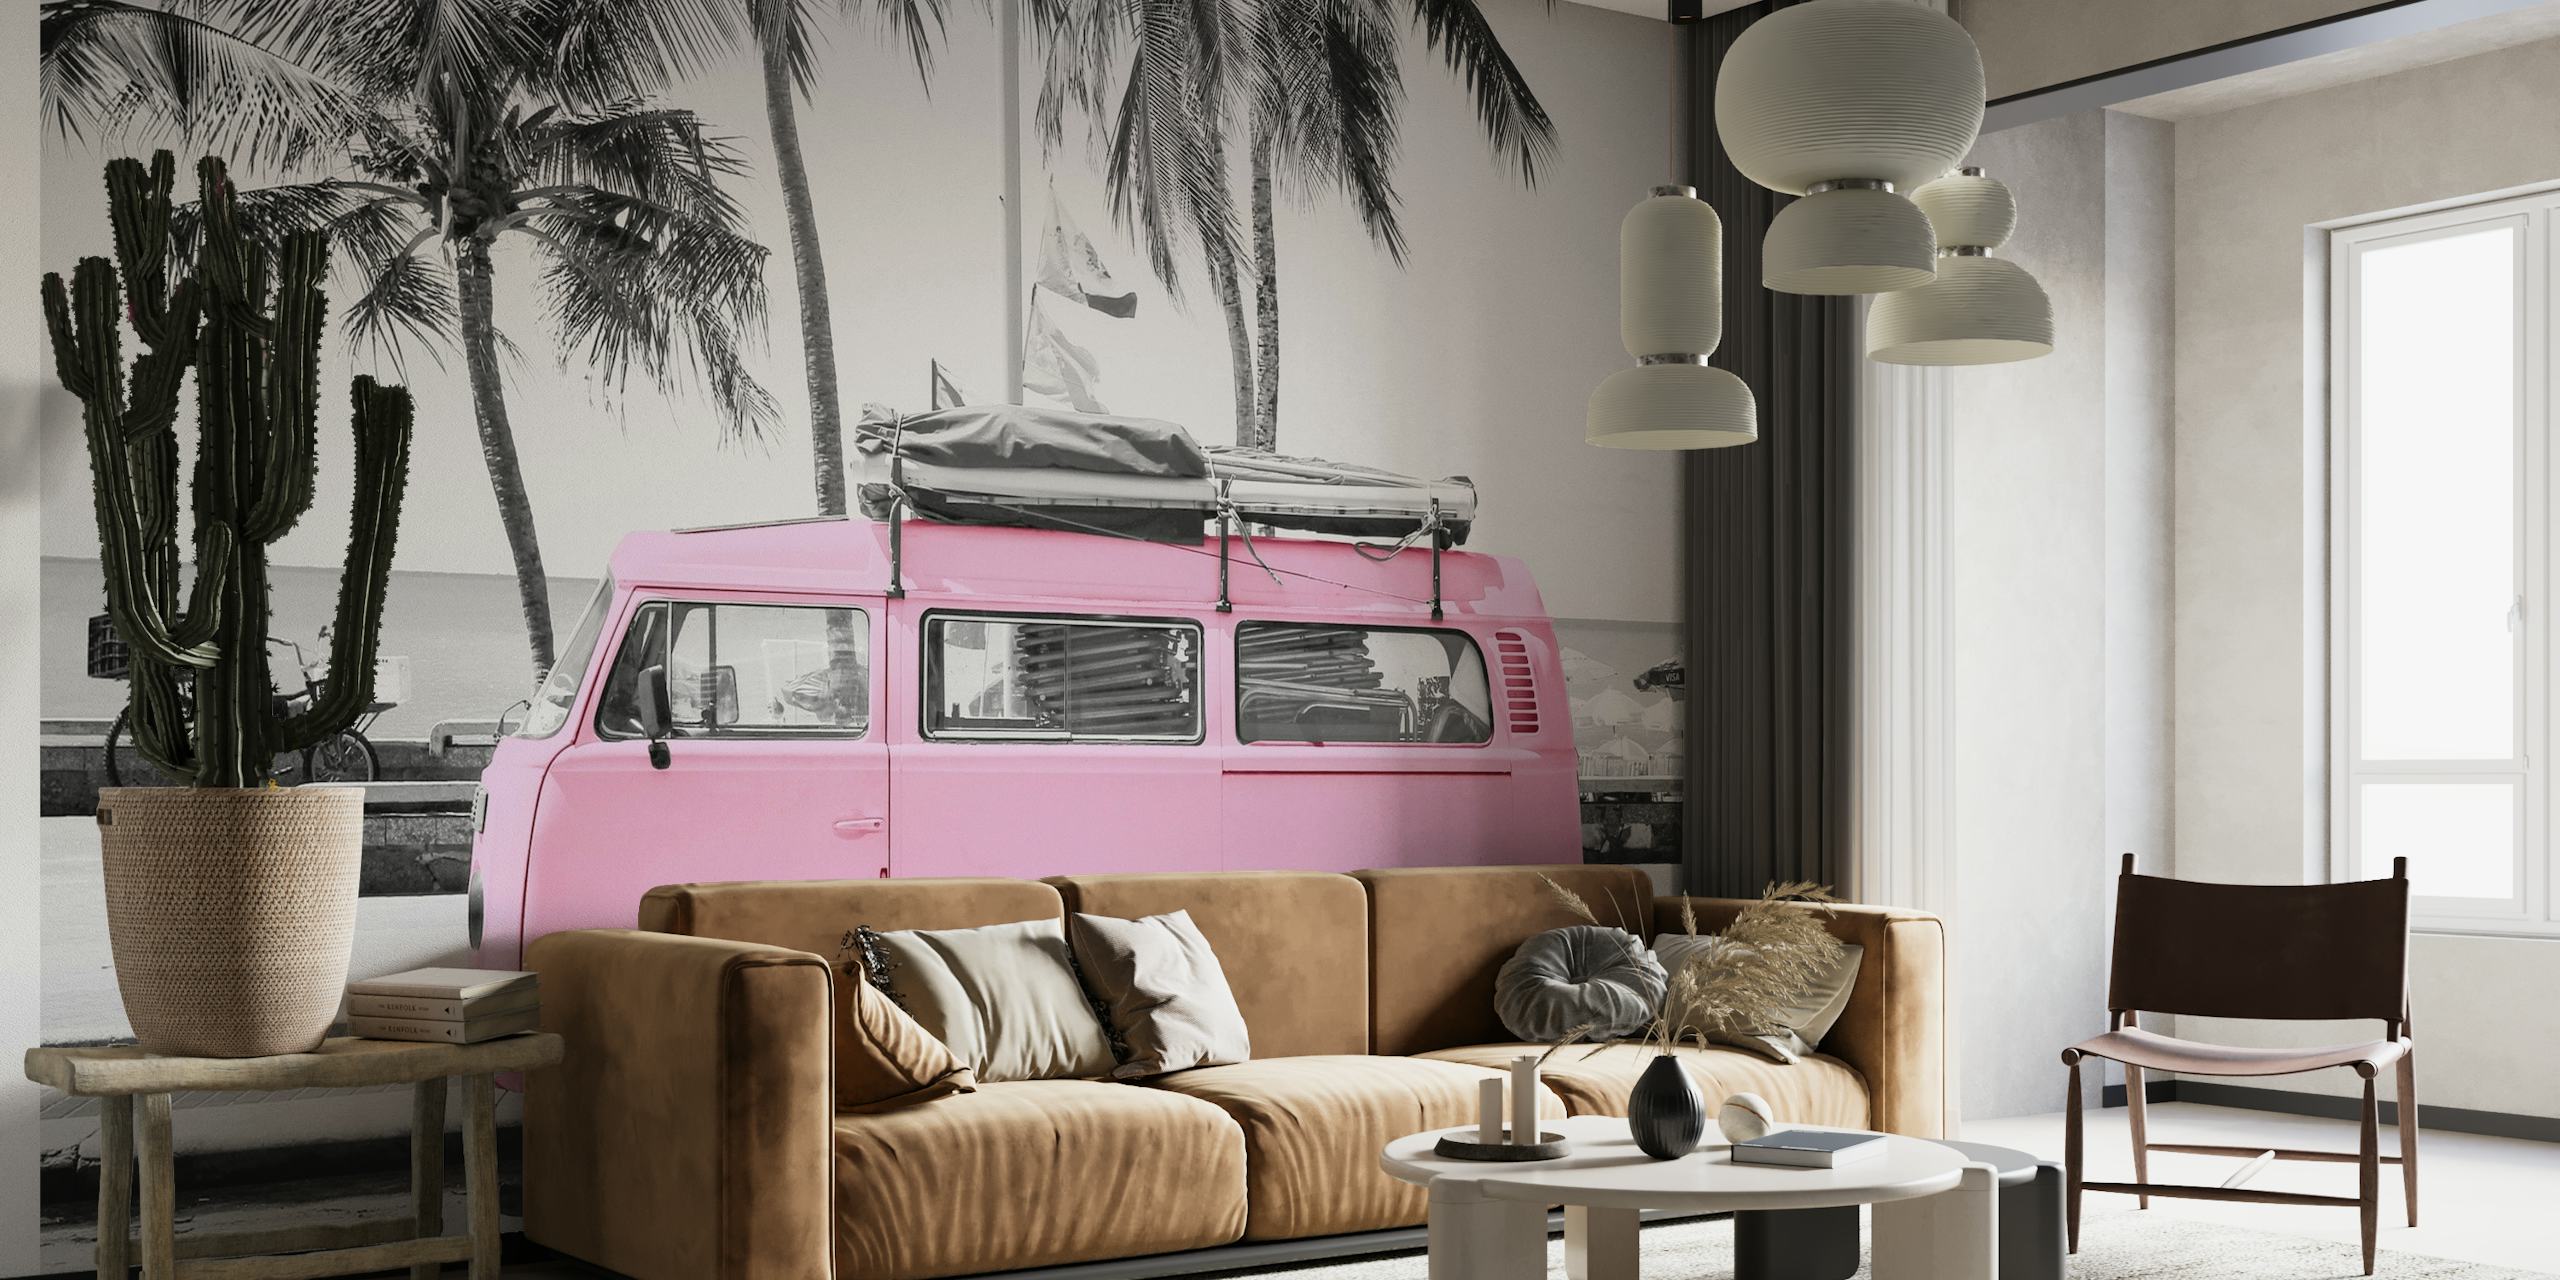 Retro pink Volkswagen beach wallpaper